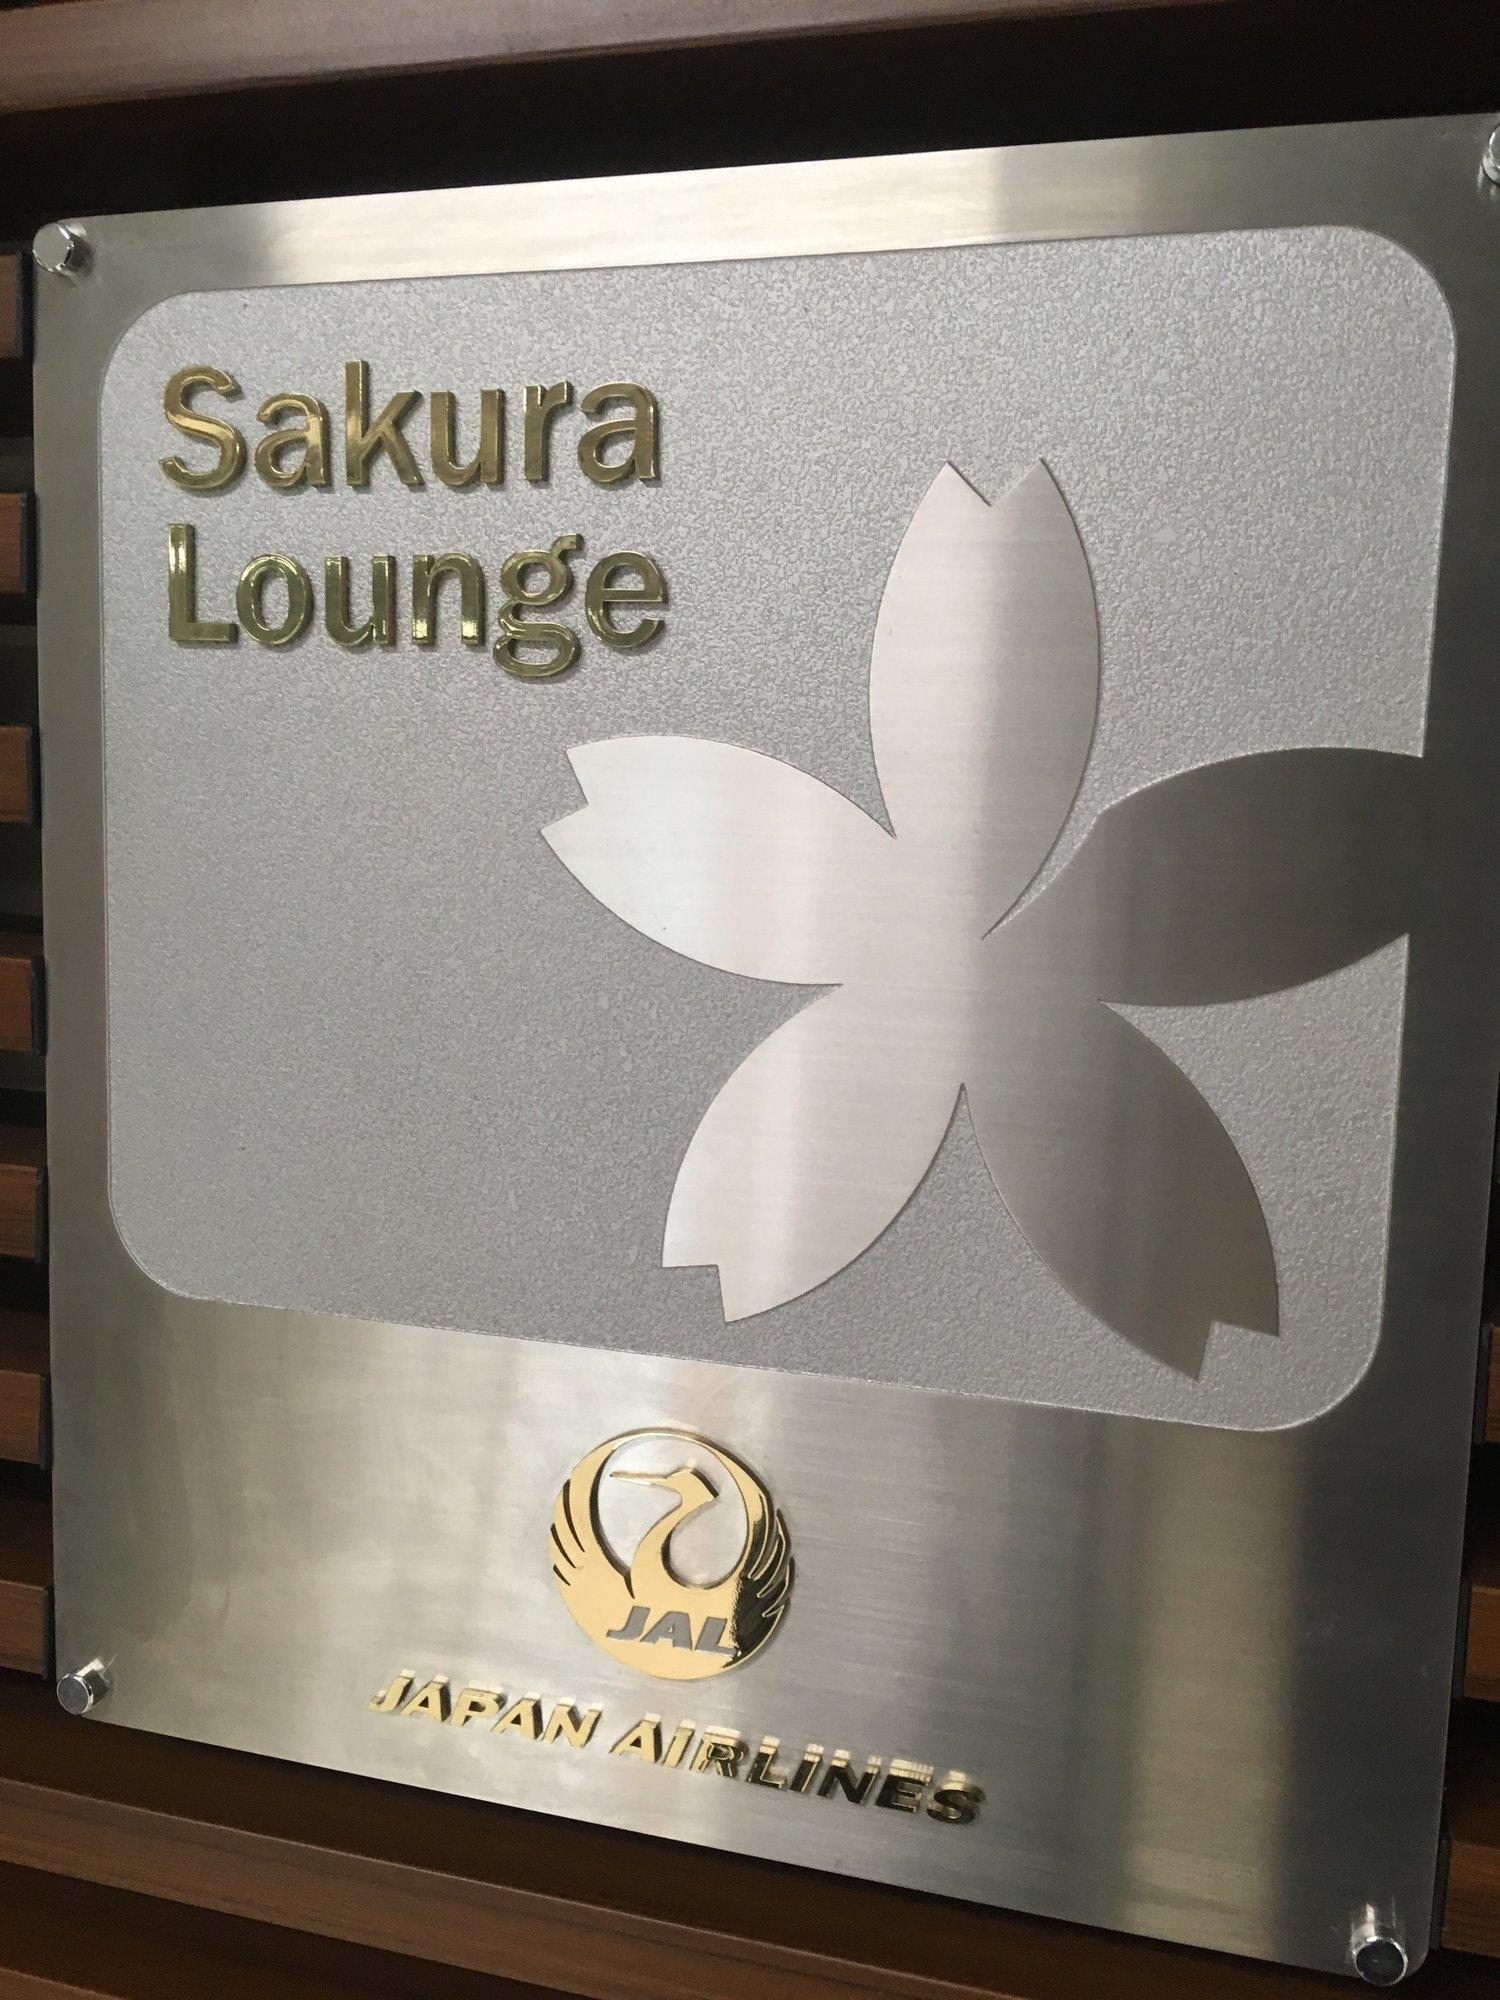 Japan Airlines JAL Sakura Lounge image 2 of 18